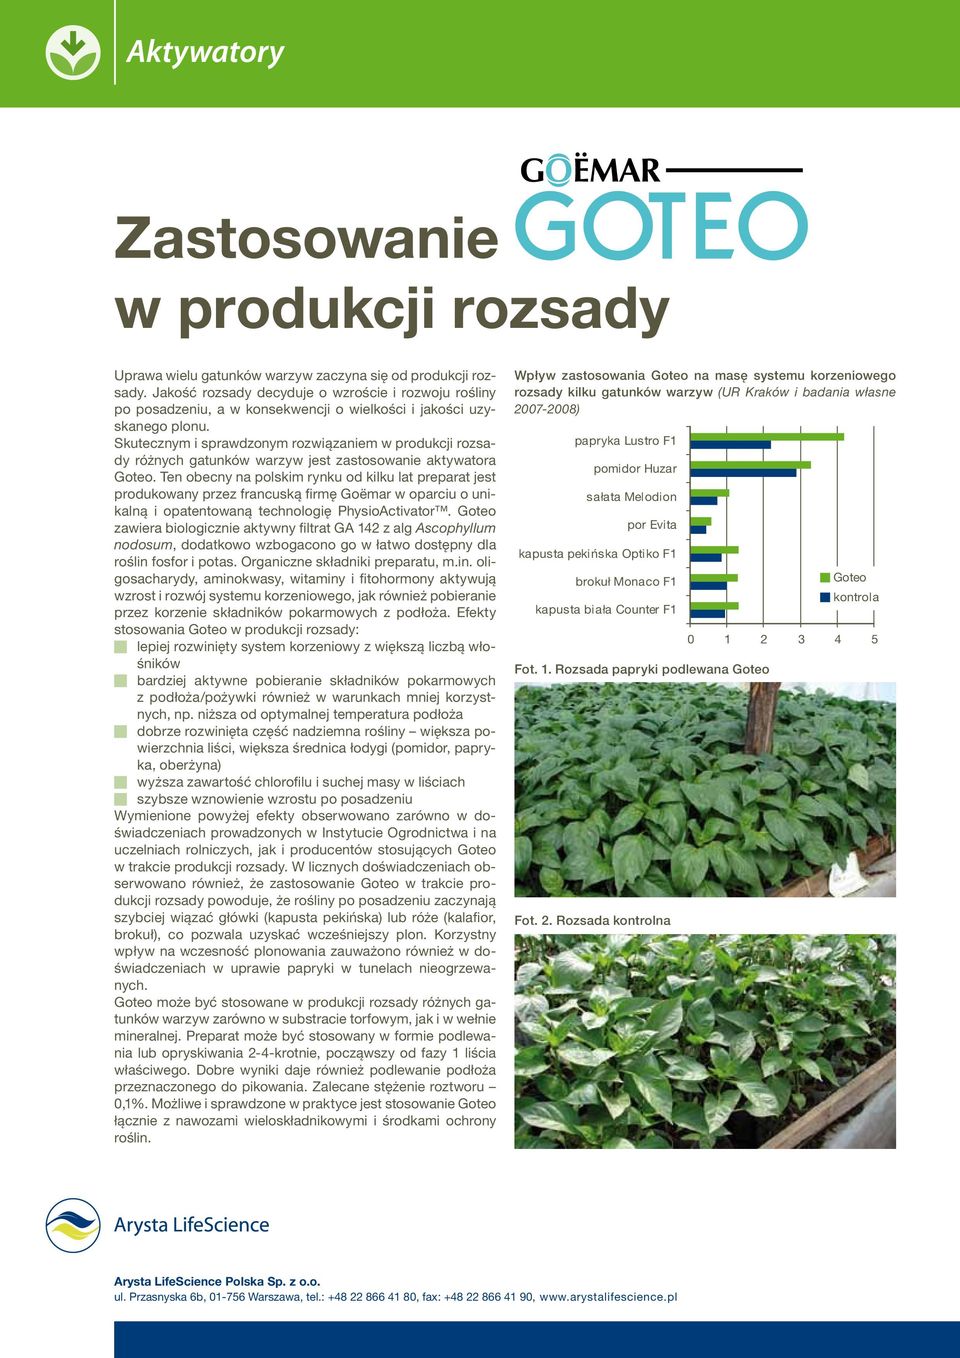 Skutecznym i sprawdzonym rozwiązaniem w produkcji rozsady różnych gatunków warzyw jest zastosowanie aktywatora Goteo.